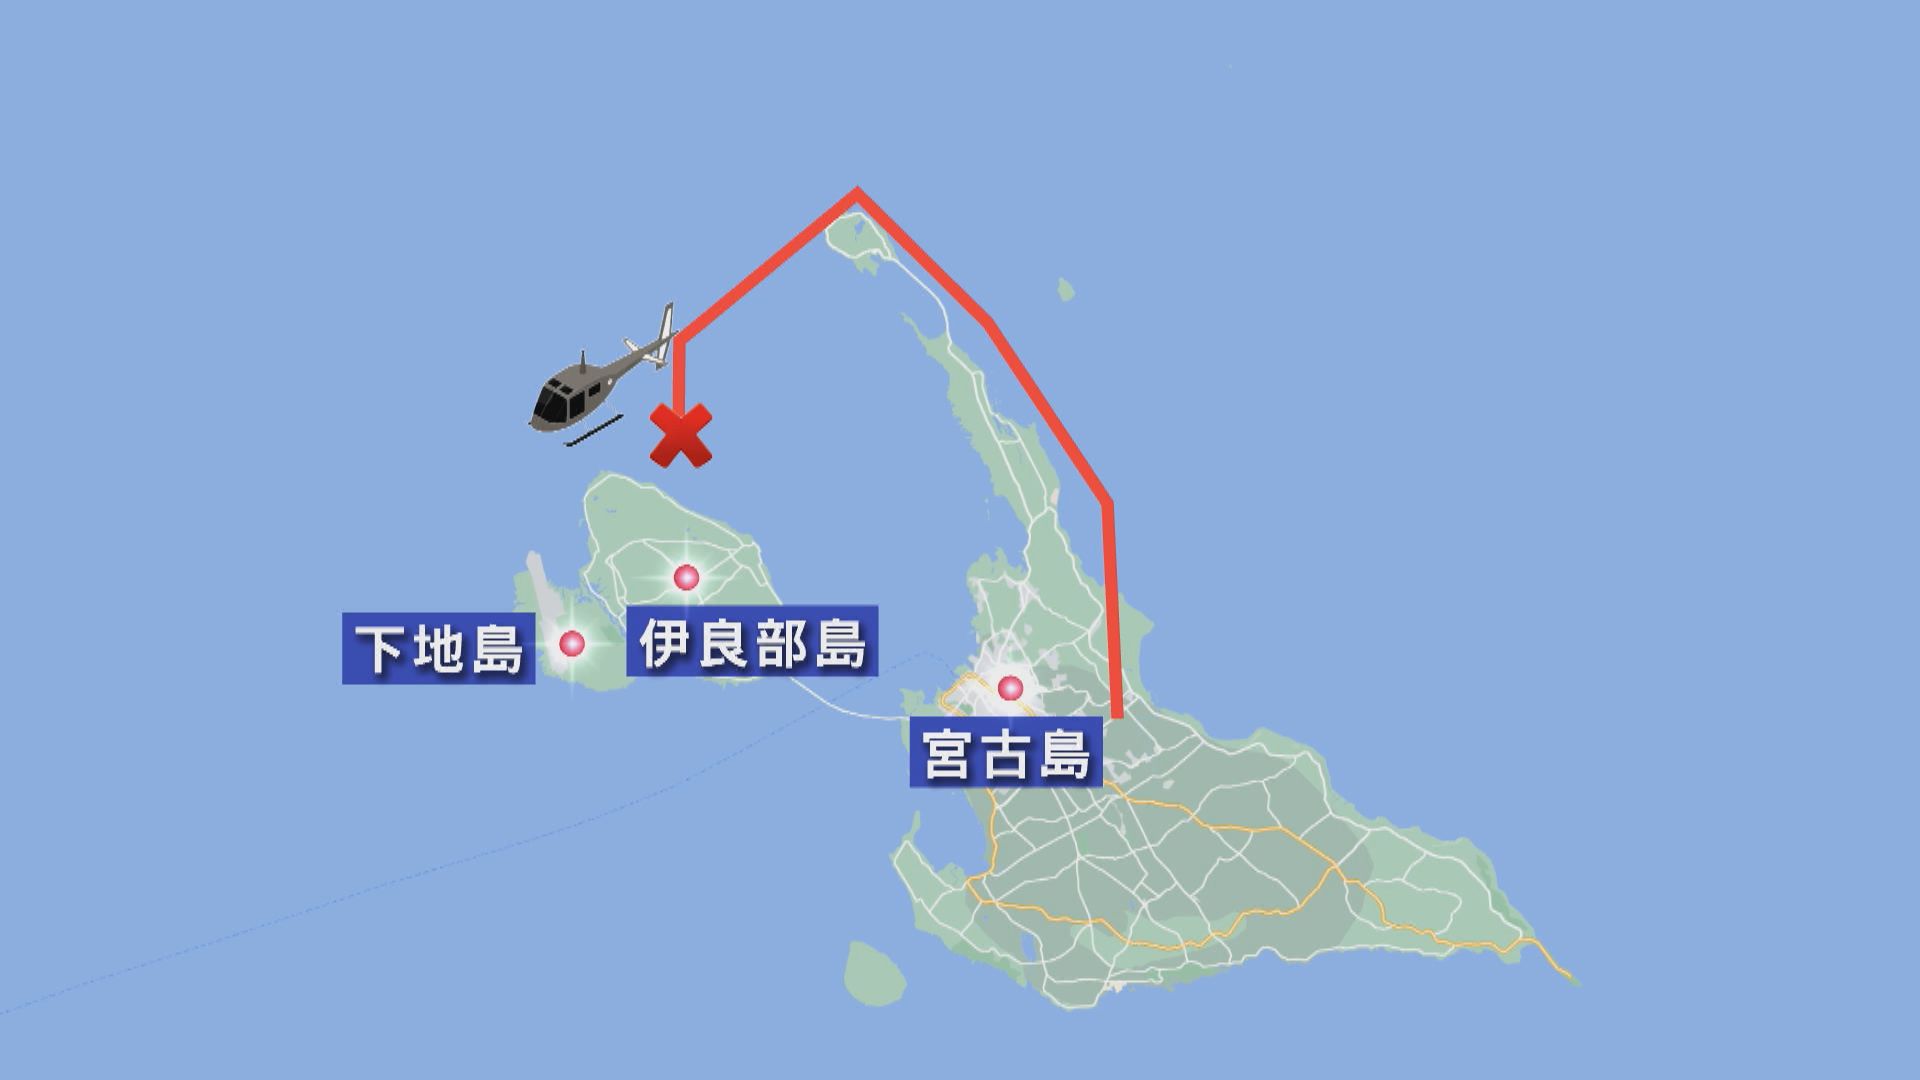 日本當局在自衛隊直升機失聯海域發現人形飄浮物